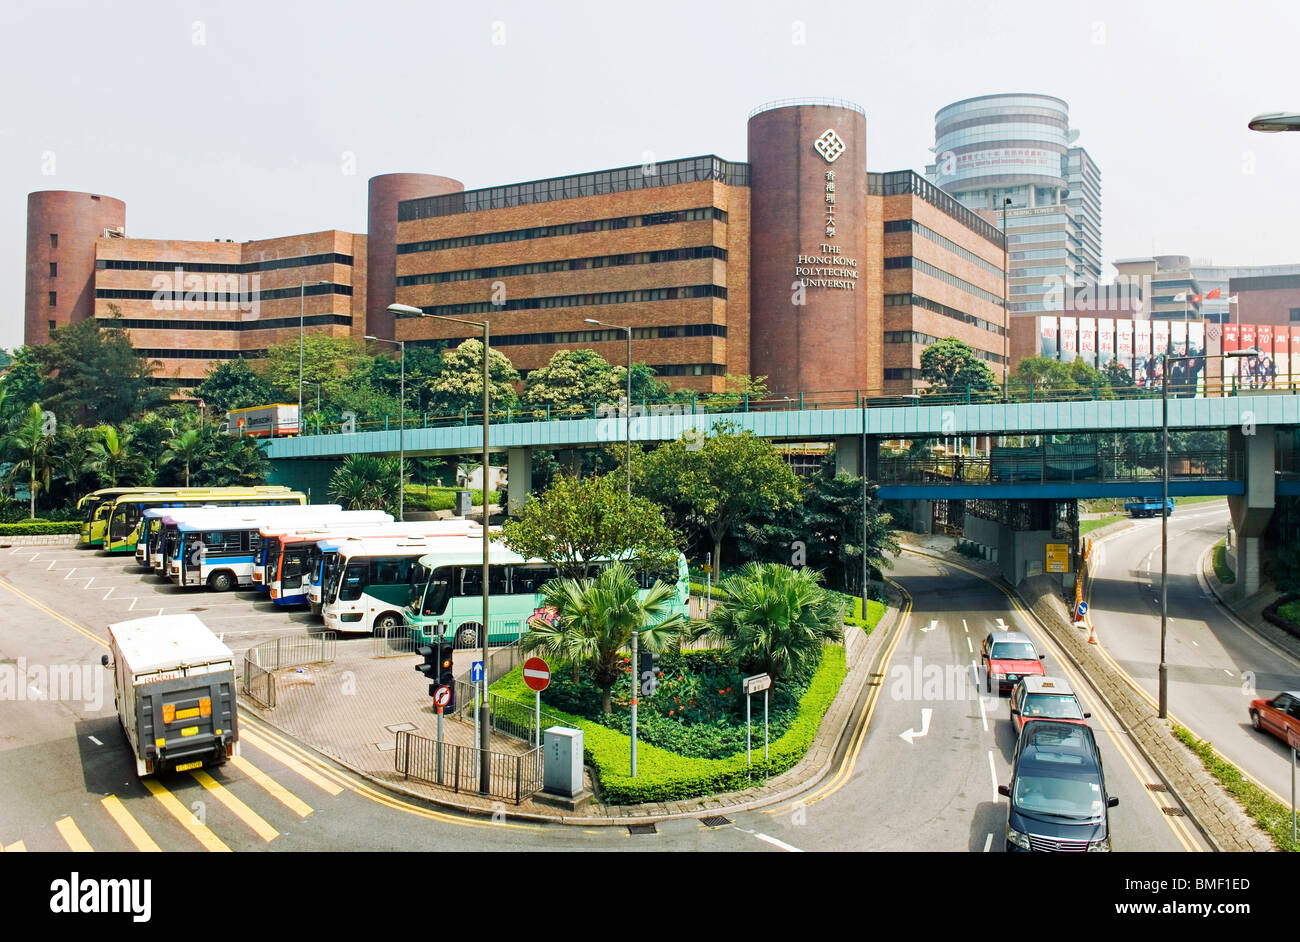 The Hong Kong Polytechnic University, Hong Kong, China Stock Photo